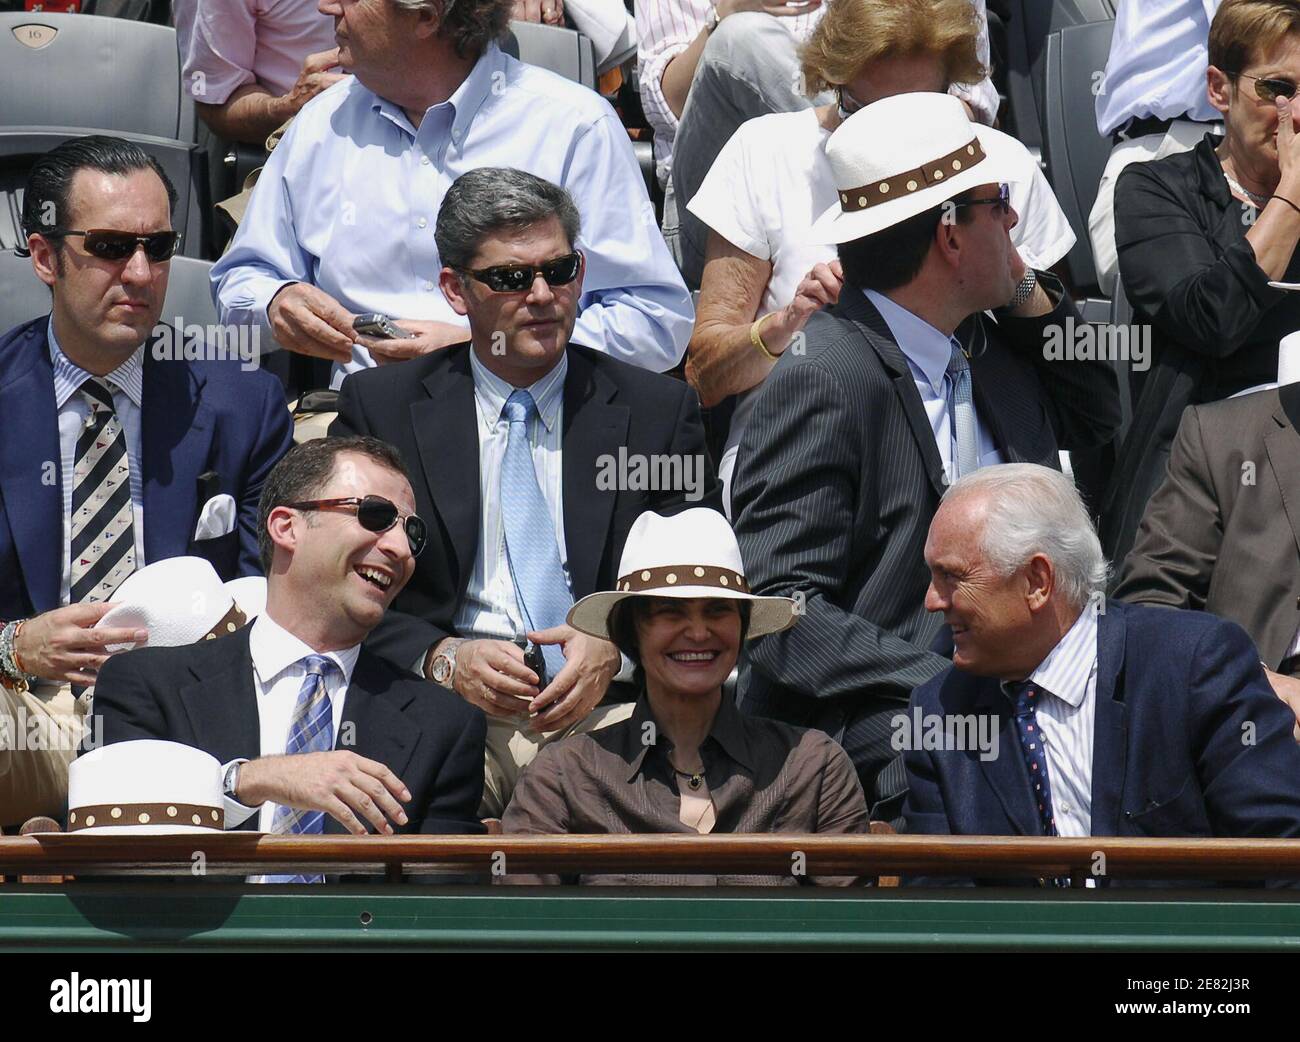 Le Prince Felipe d'Espagne, Jaime de Marichalar et le président de la FFT  Christian Bimes participent au match final masculin du tournoi de tennis  Open de France au stade Roland Garros à